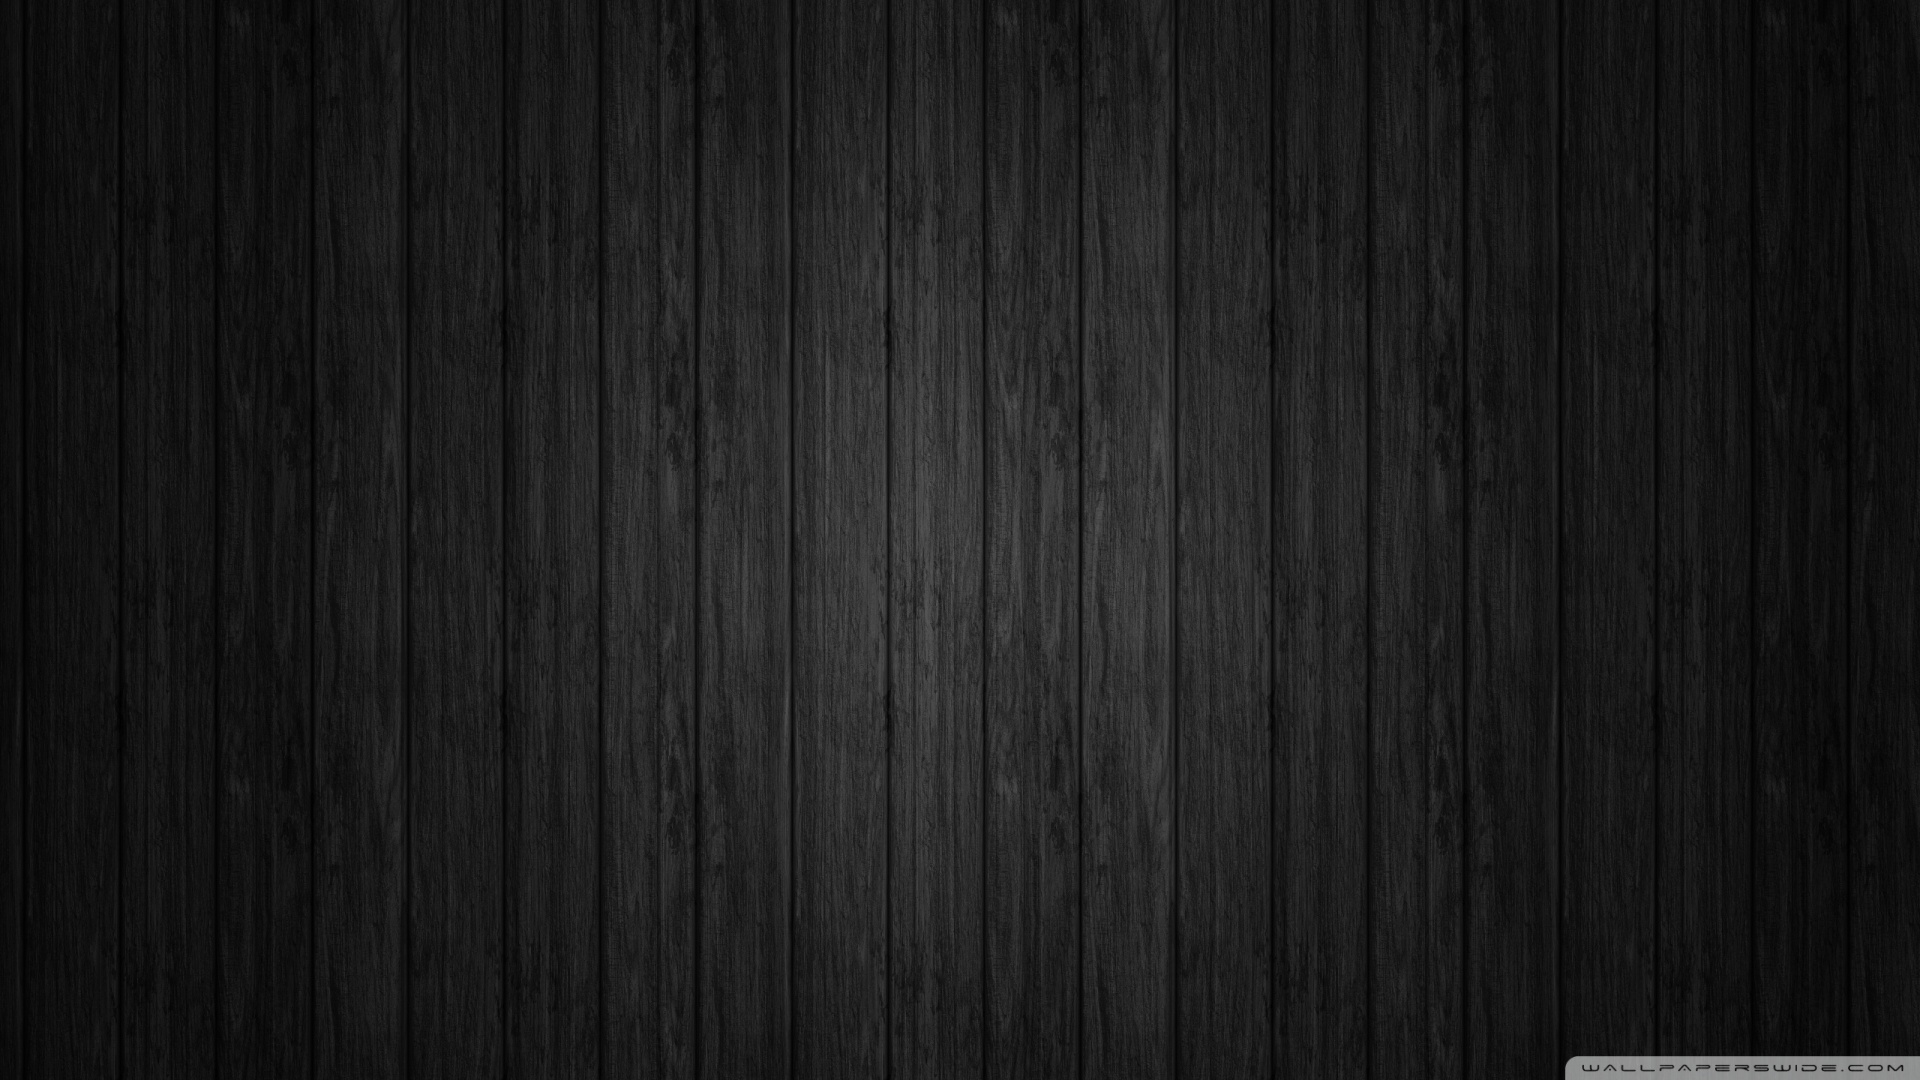 Hình nền giấy dán tường gỗ đen đẹp mắt, phù hợp với không gian trang trí nội thất hiện đại và sang trọng. Thêm sự bí ẩn và độc đáo cho không gian của bạn với hình ảnh này.